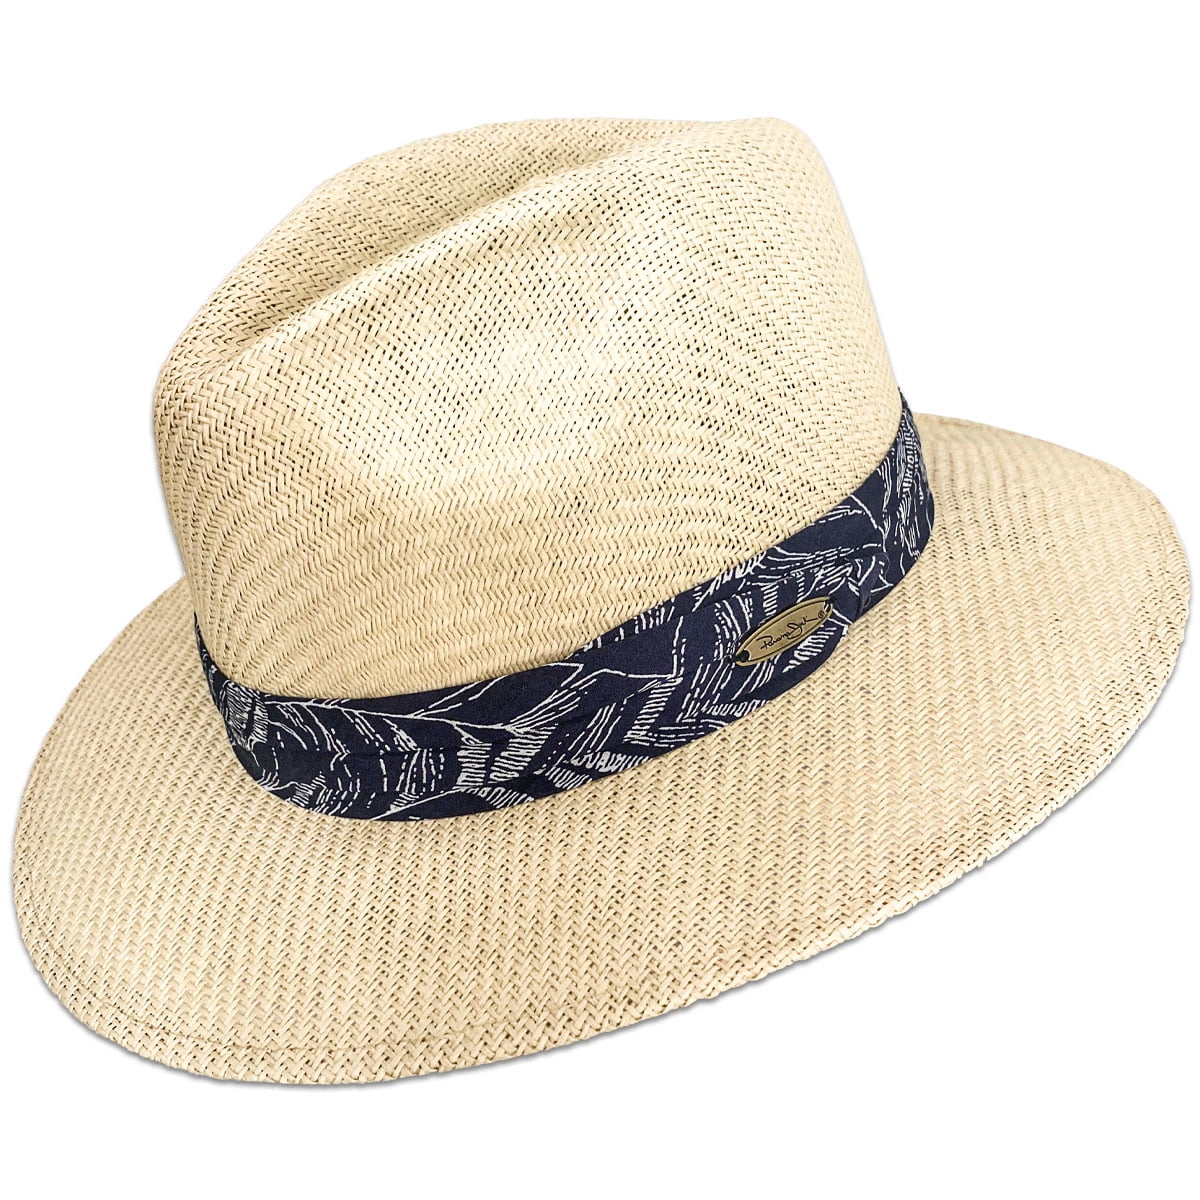 Panama Jack Natural Matte Toyo Safari Sun Hat 